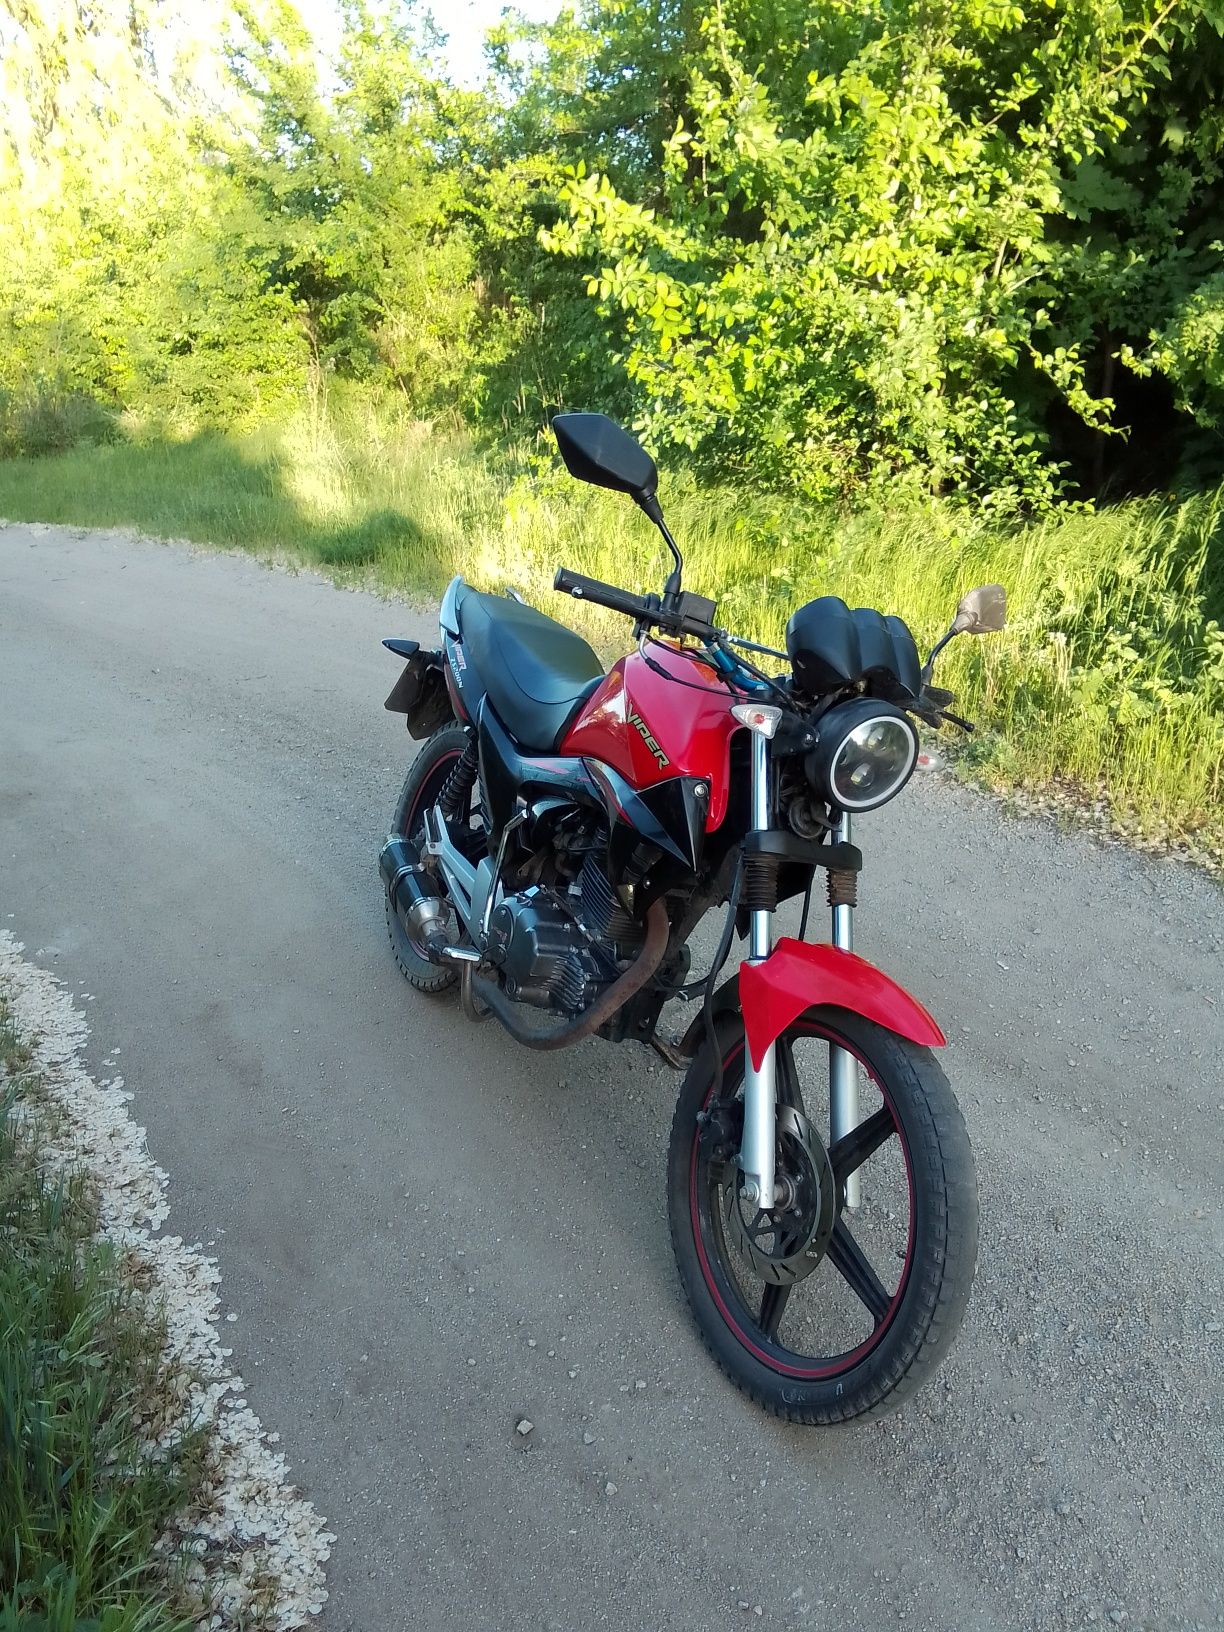 Мотоцикл viper zs200n продажа | обмен